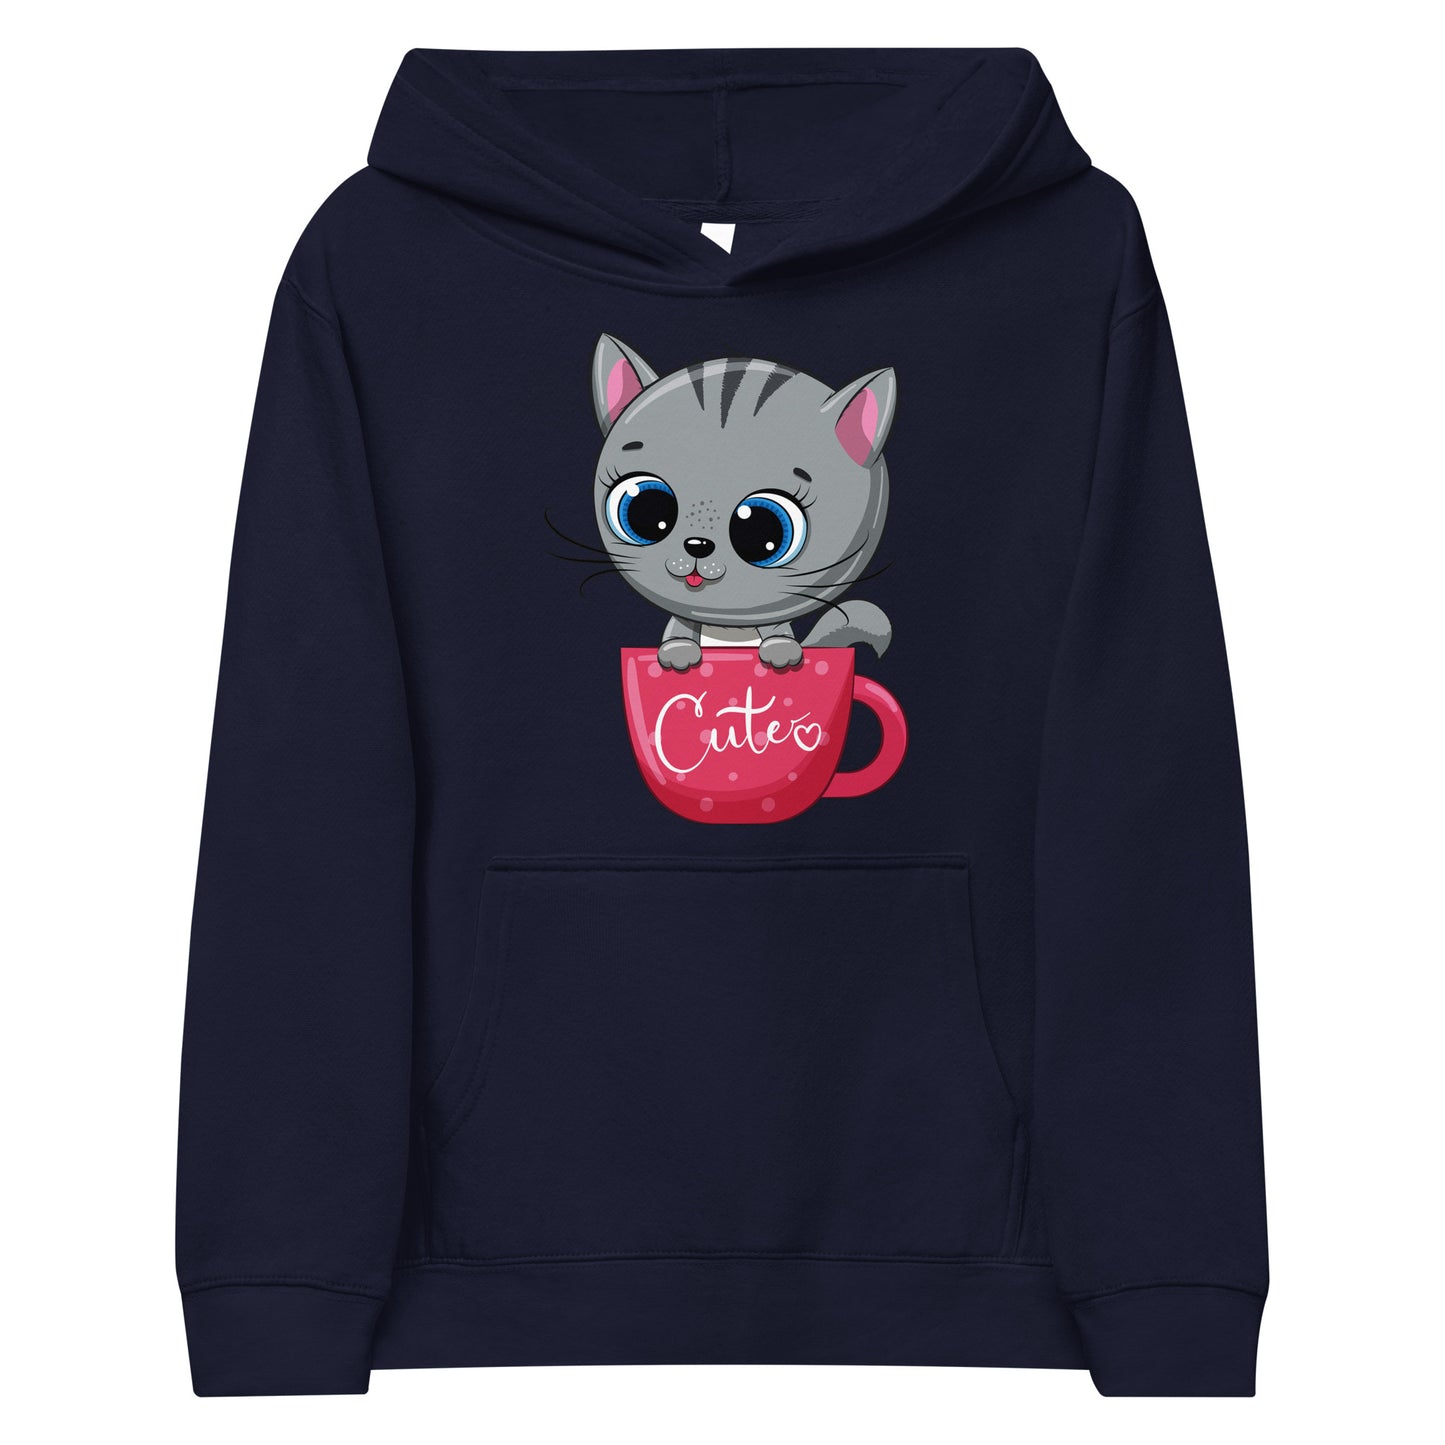 Cute Baby Cat Inside Cup Hoodie, No. 0268